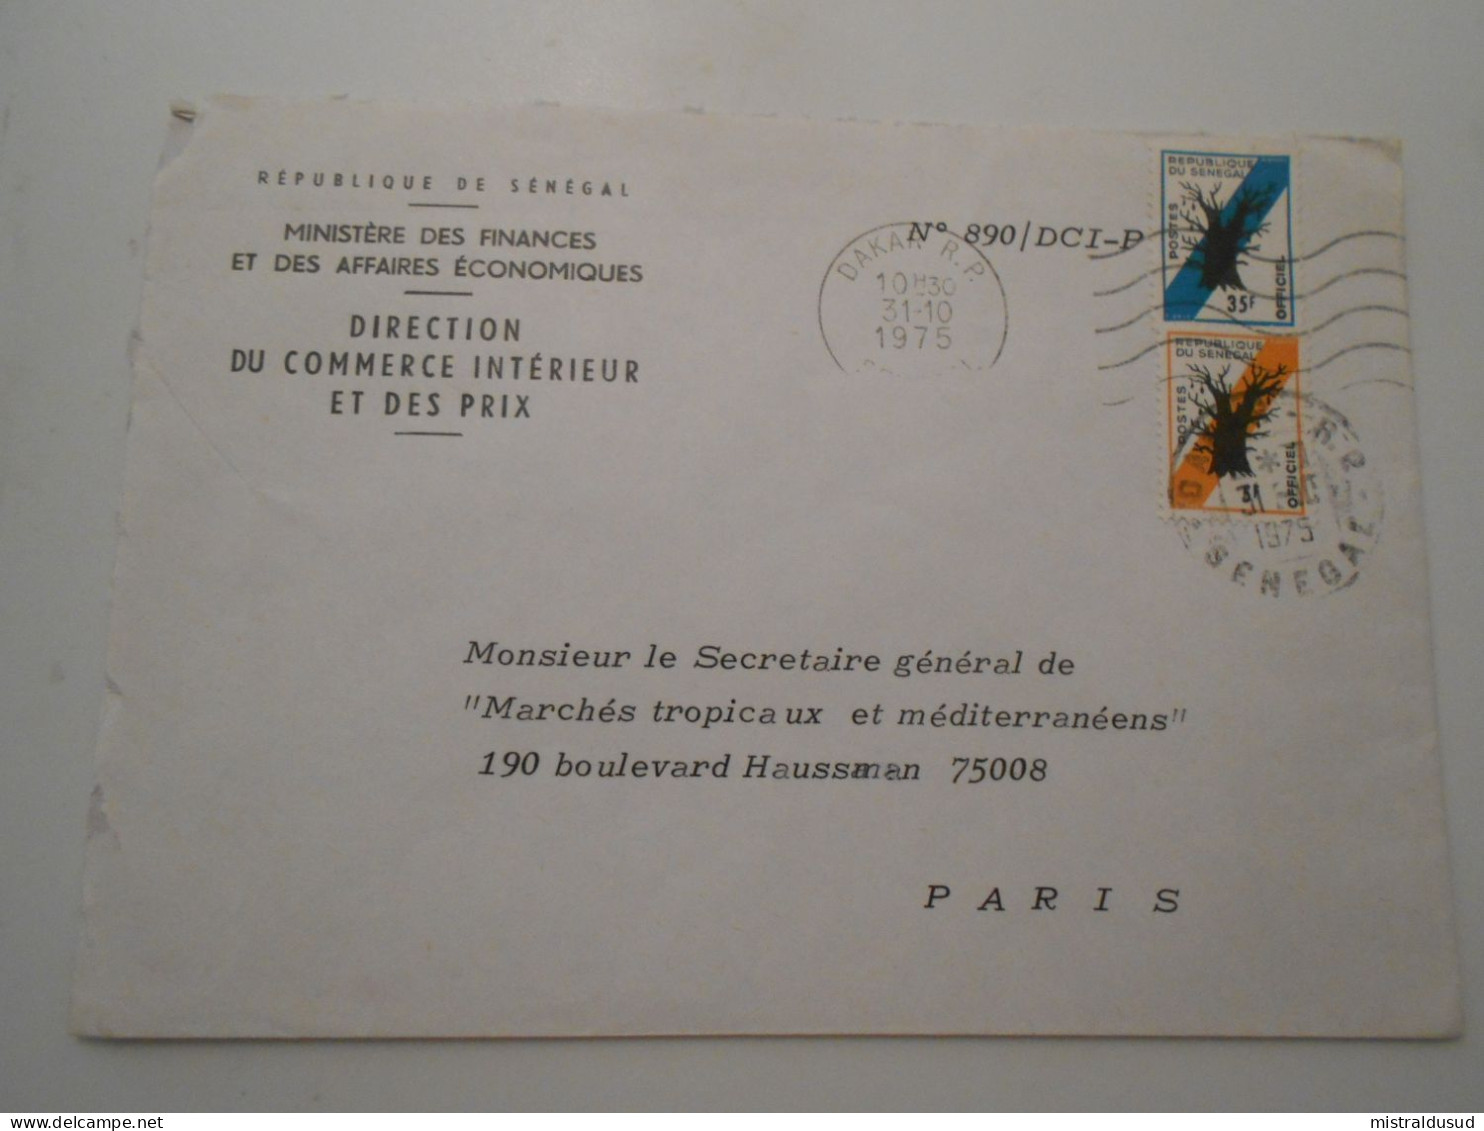 Senegal Postes Offiçiel , Lettre De Dakar 1975 Pour Paris - Sénégal (1960-...)